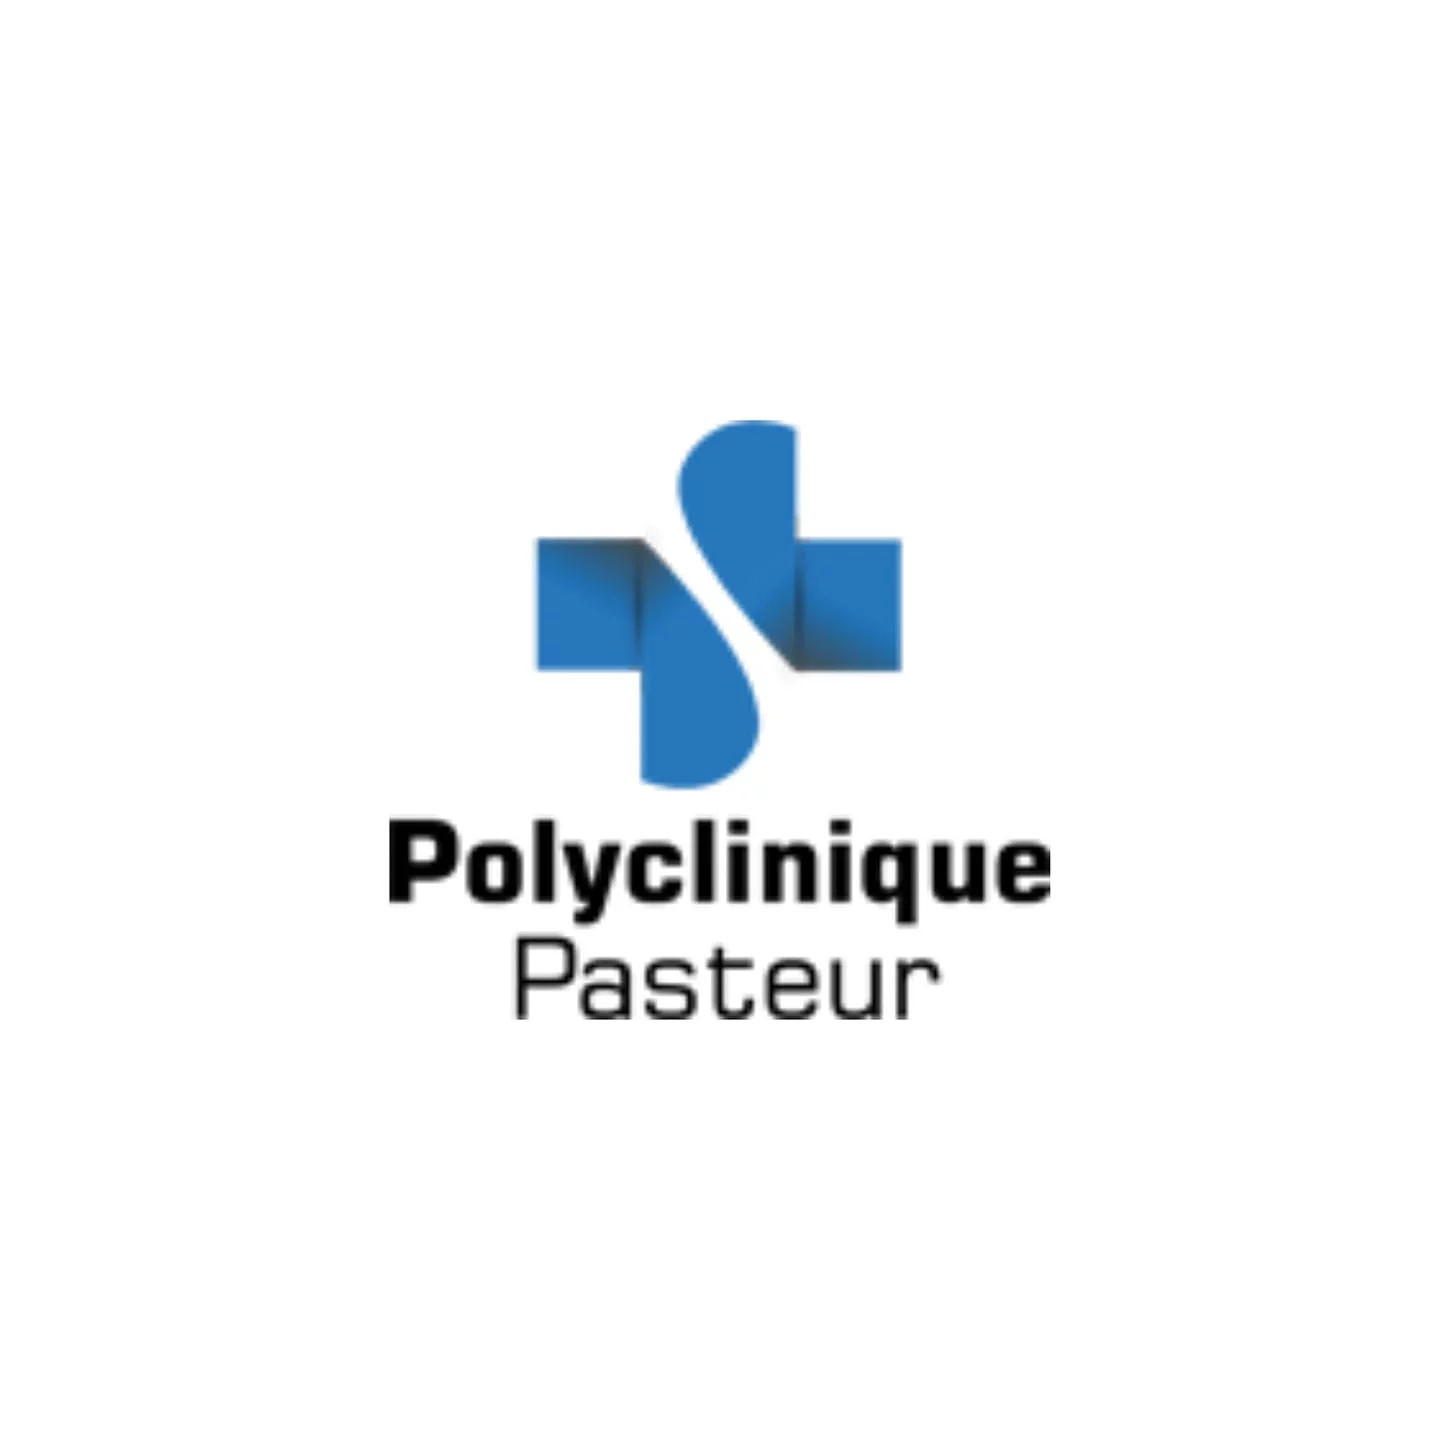 Polyclinic Pasteur